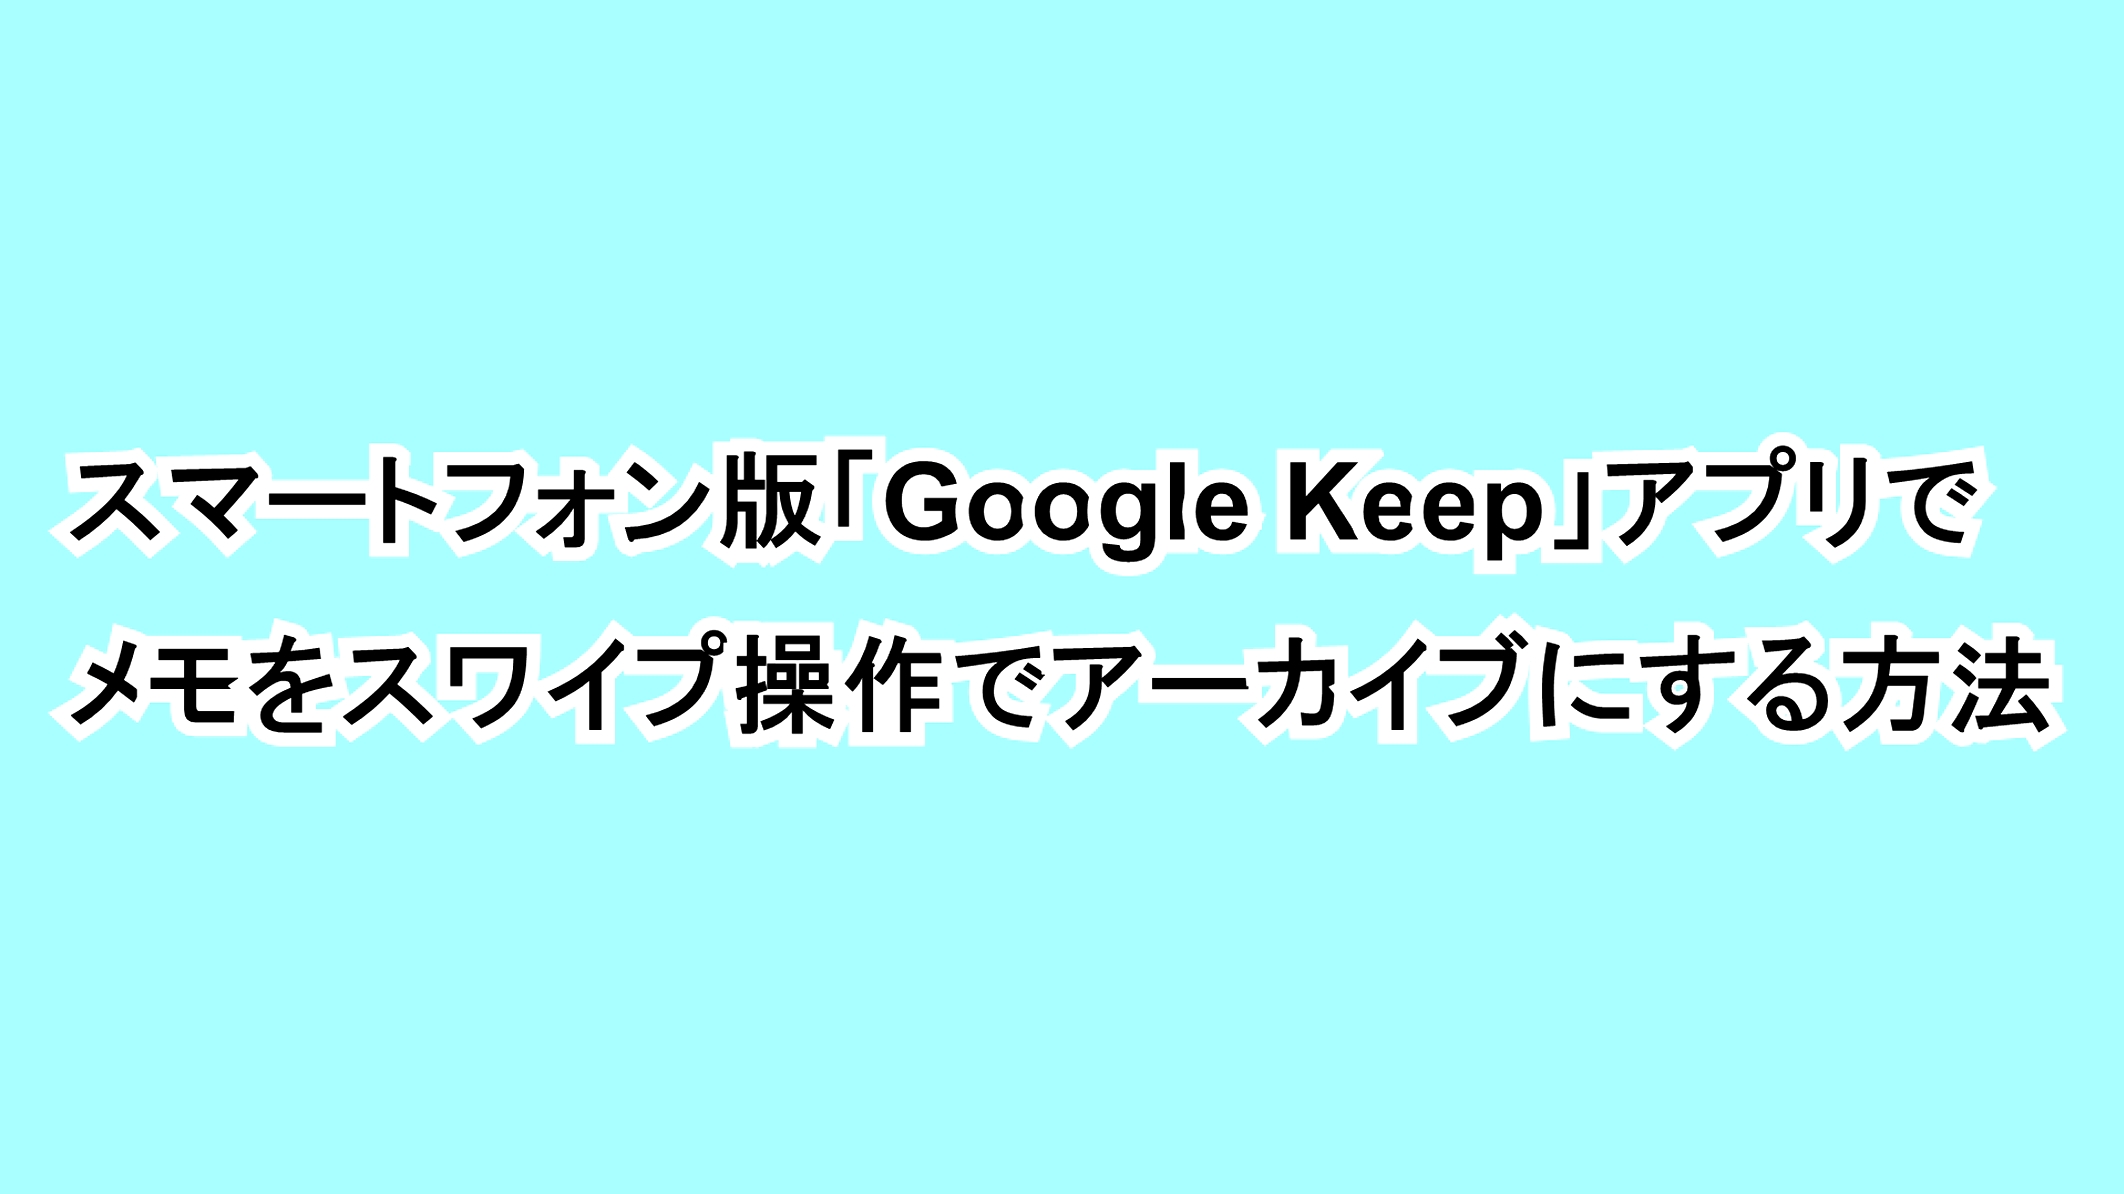 スマートフォン版「Google Keep」アプリでメモをスワイプ操作でアーカイブにする方法